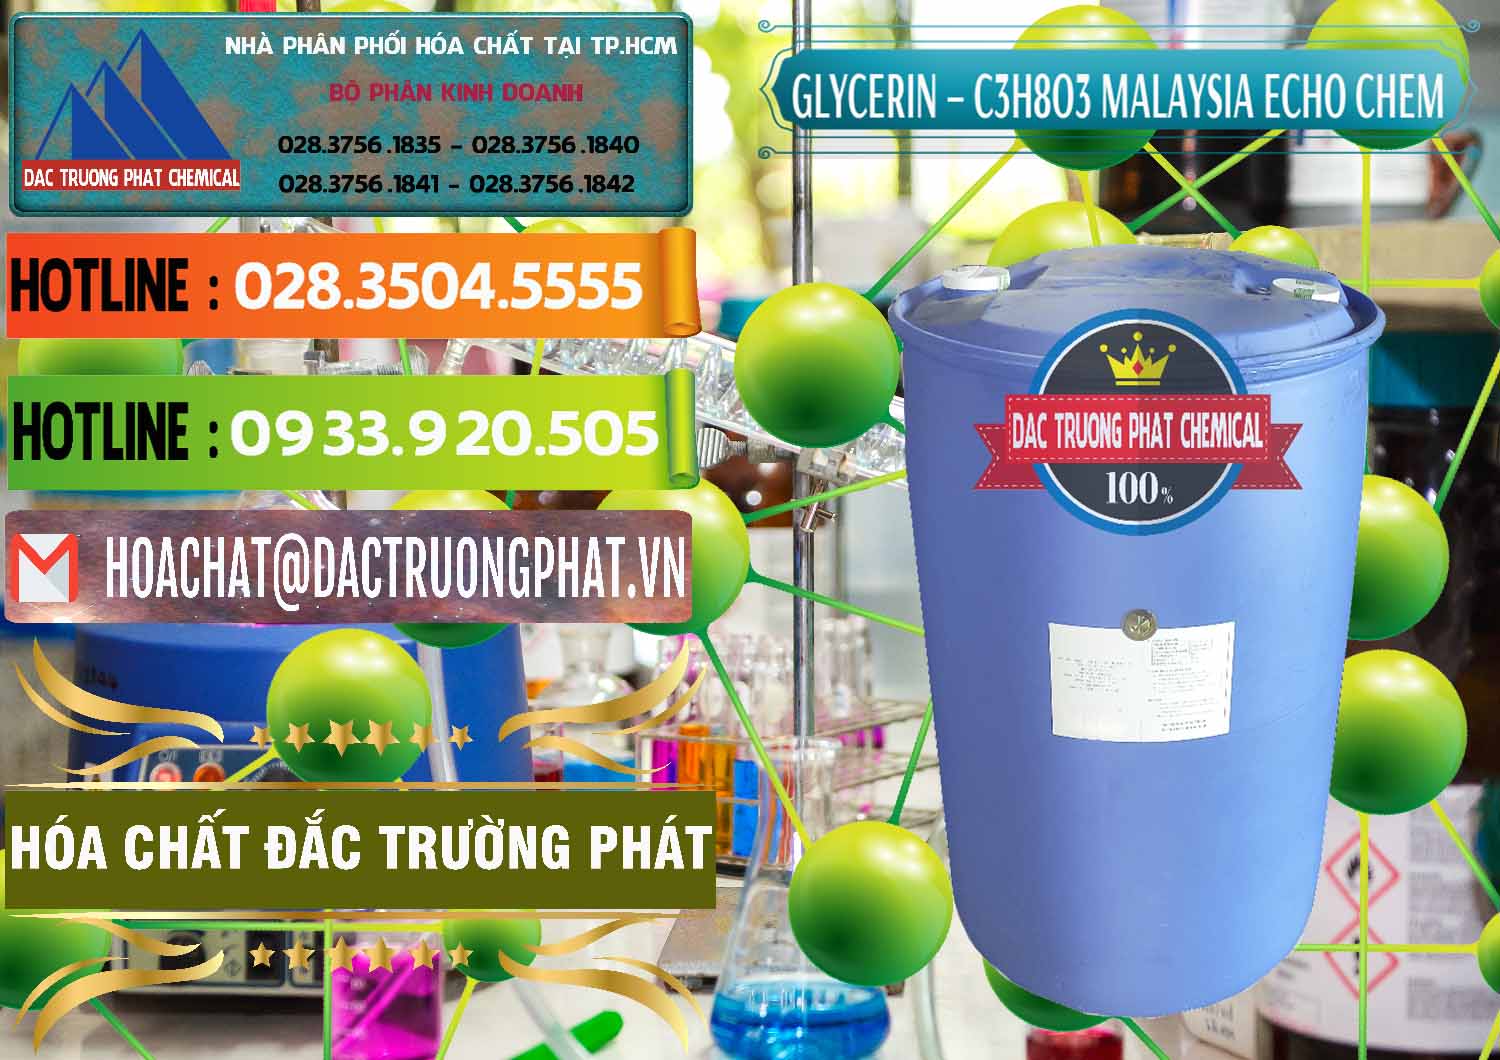 Công ty cung cấp _ bán Glycerin – C3H8O3 99.7% Echo Chem Malaysia - 0273 - Công ty chuyên phân phối & bán hóa chất tại TP.HCM - cungcaphoachat.com.vn